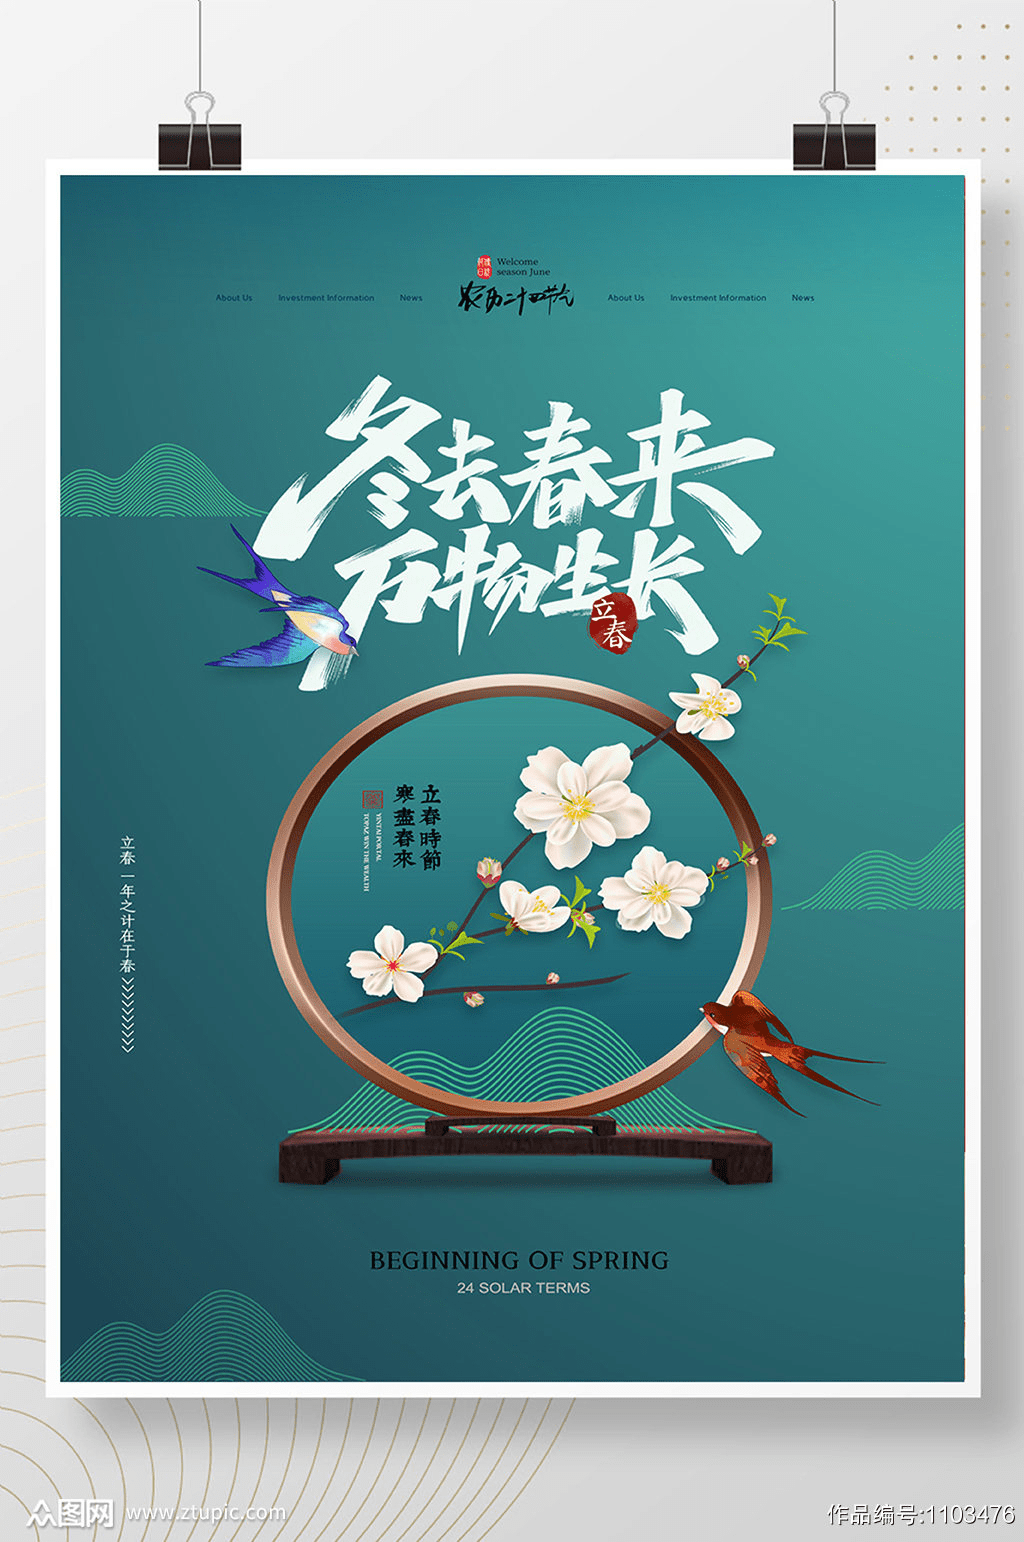 春天一定是最具中国风的季节了,春天的代表元素有很多,燕子,牡丹花